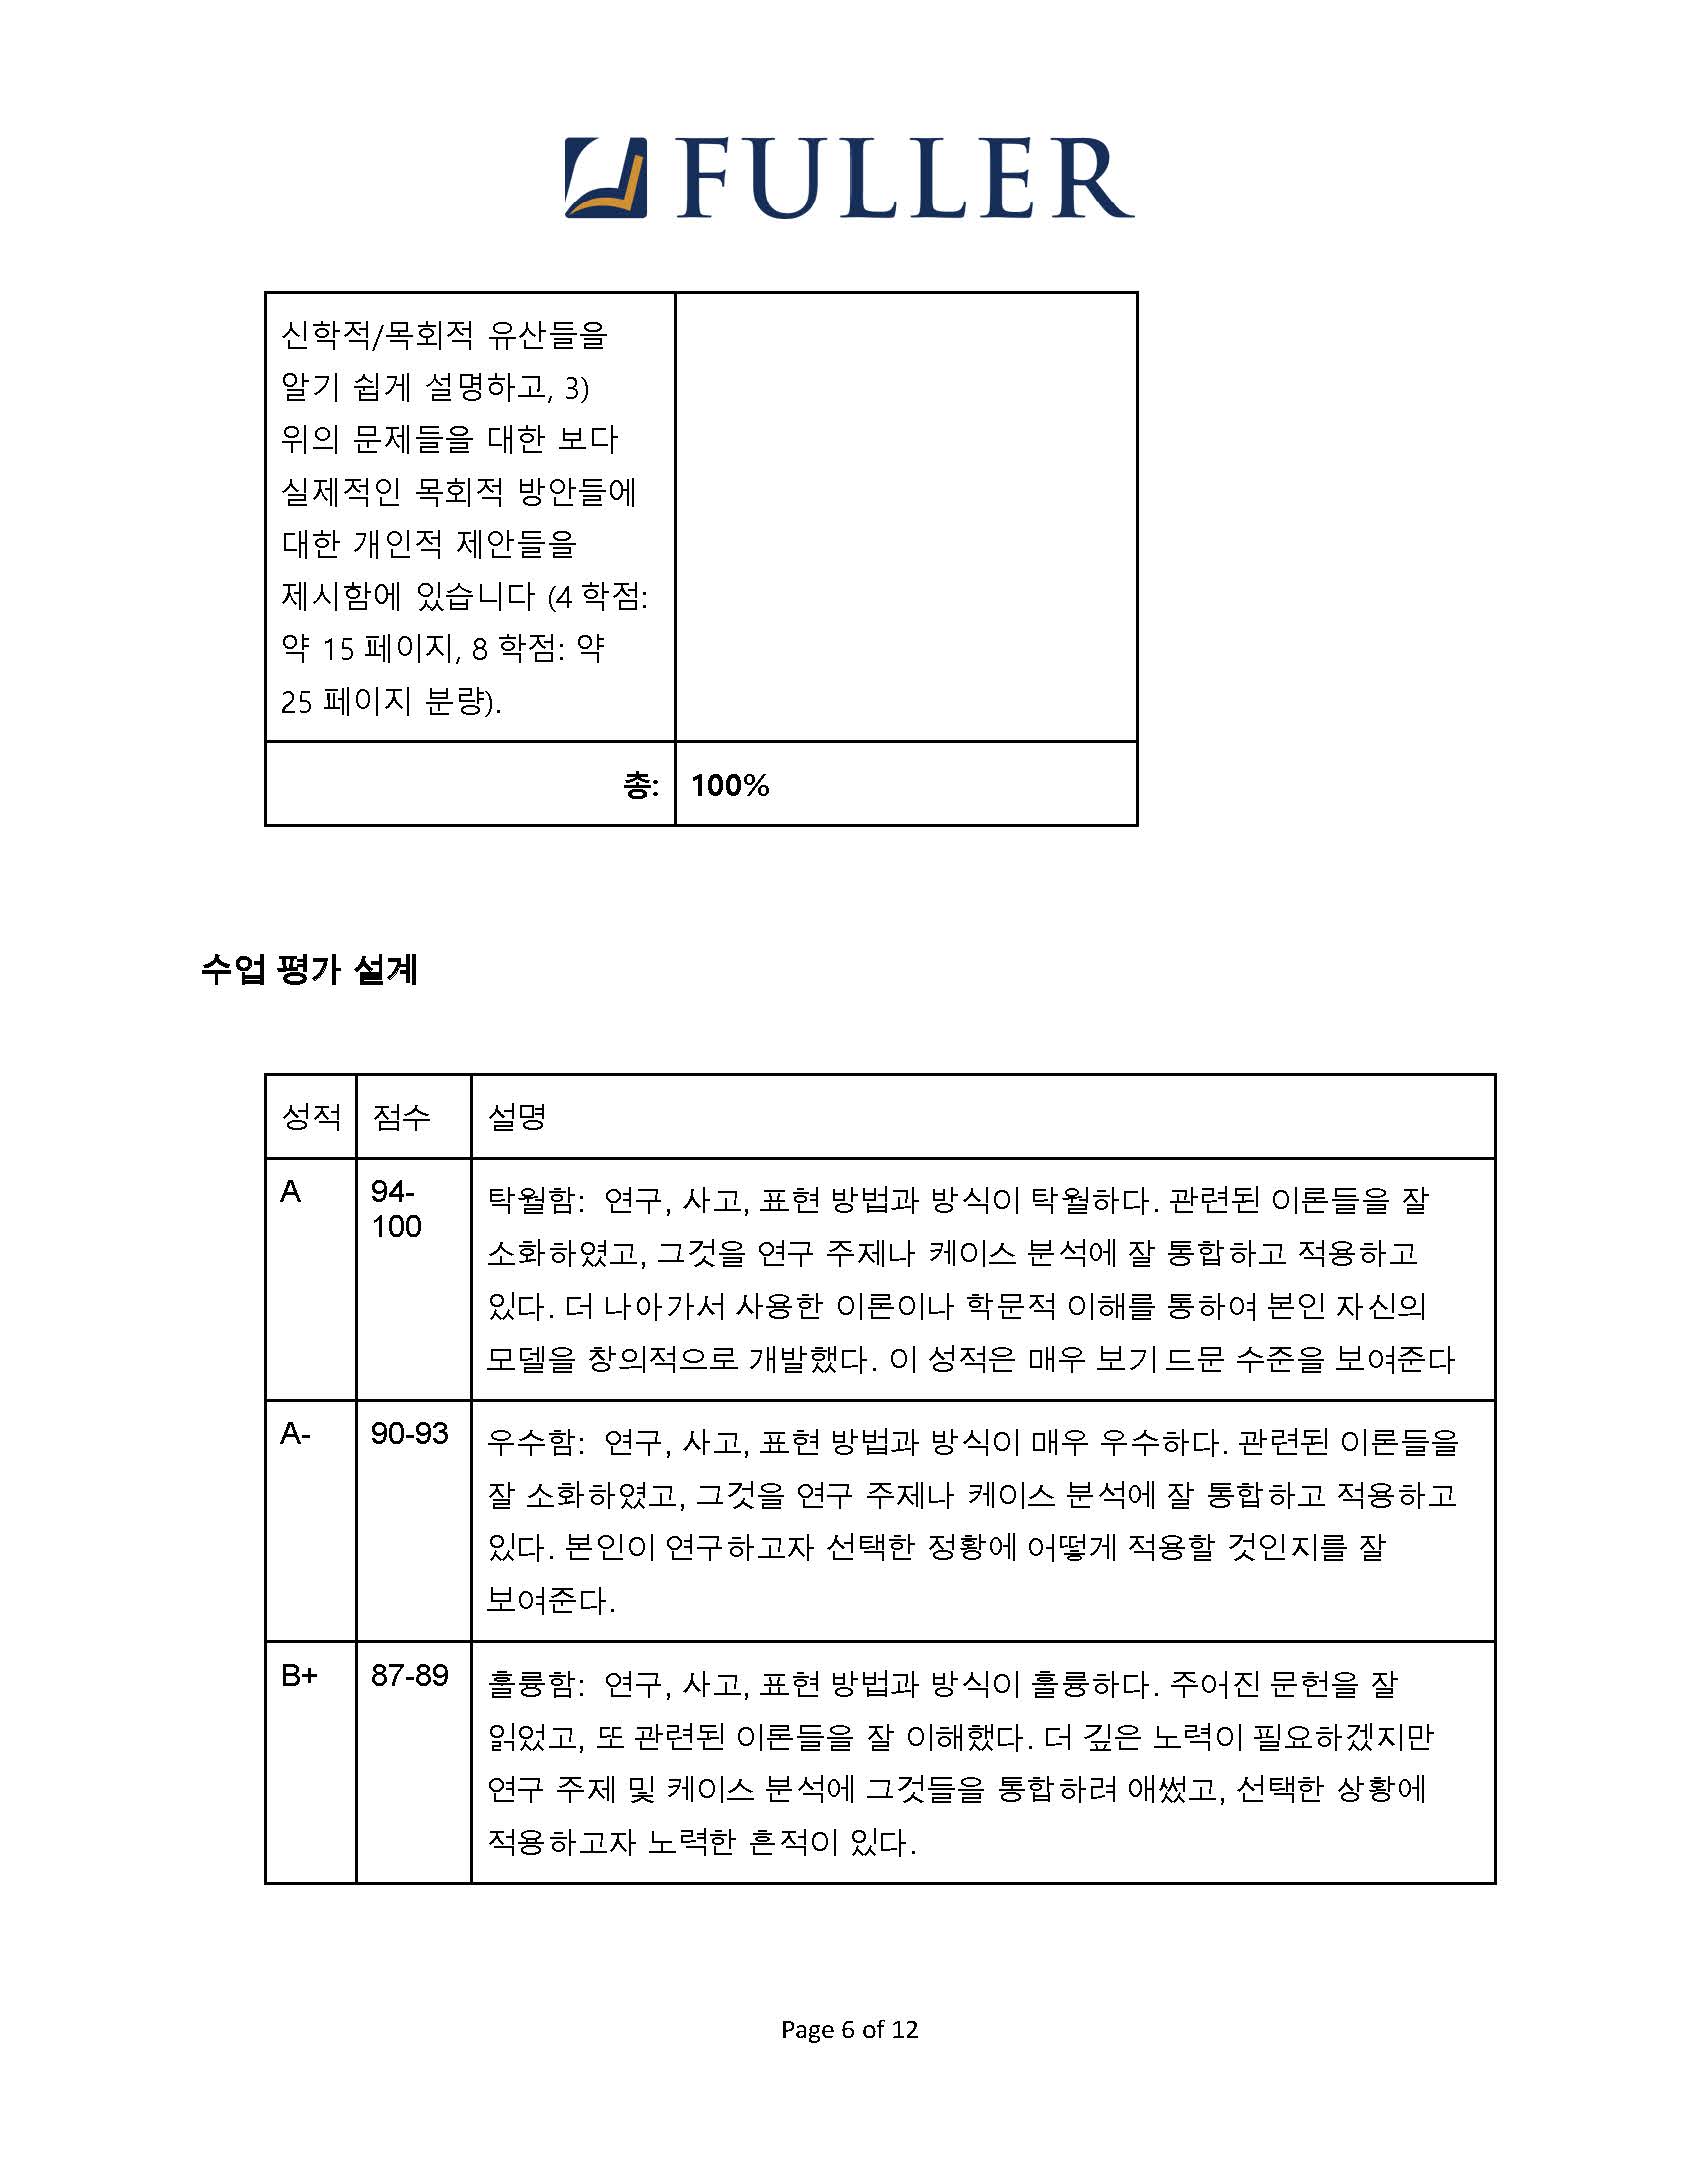 CH743 Syllabus (Korean) (1)_Page_06.jpg